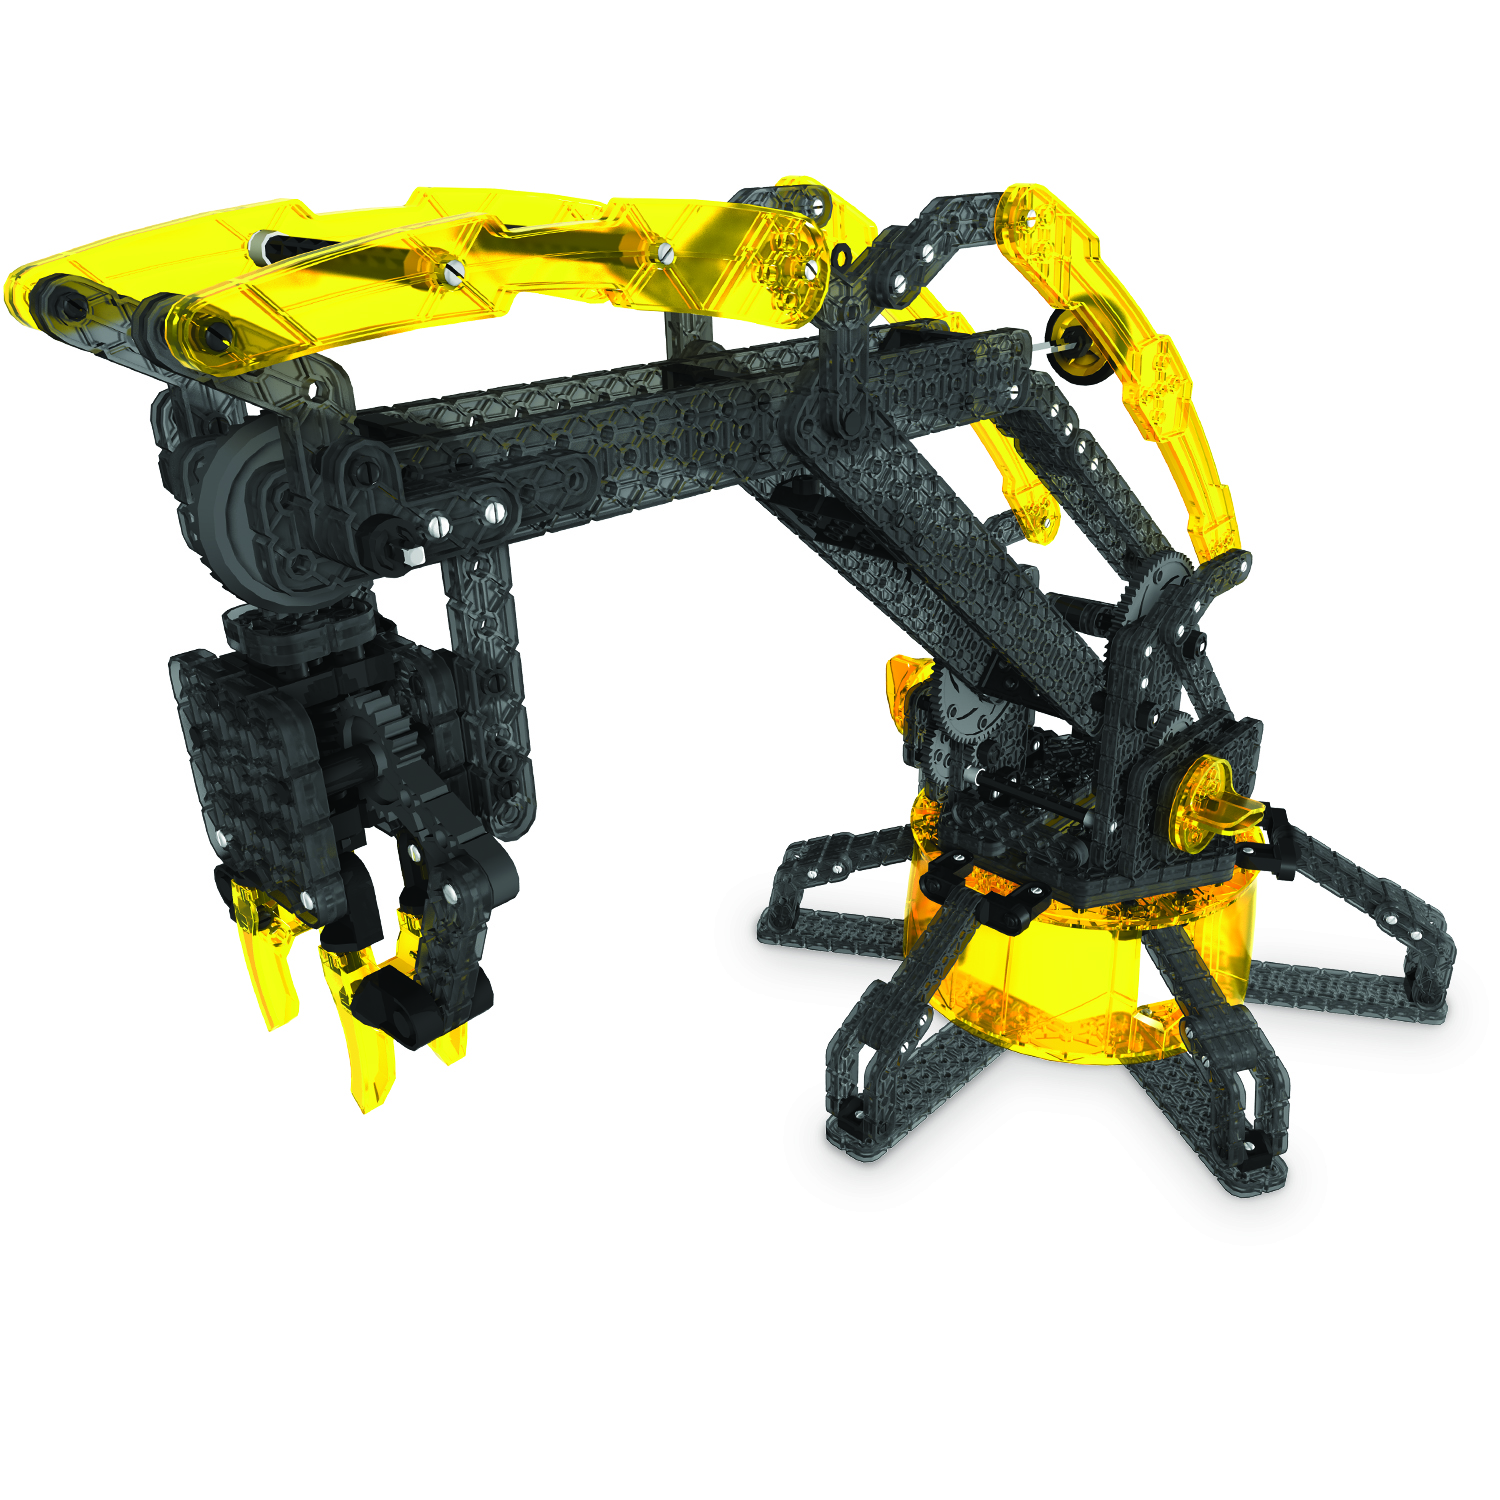 Hexbug Vex Robotics Robotic Arm